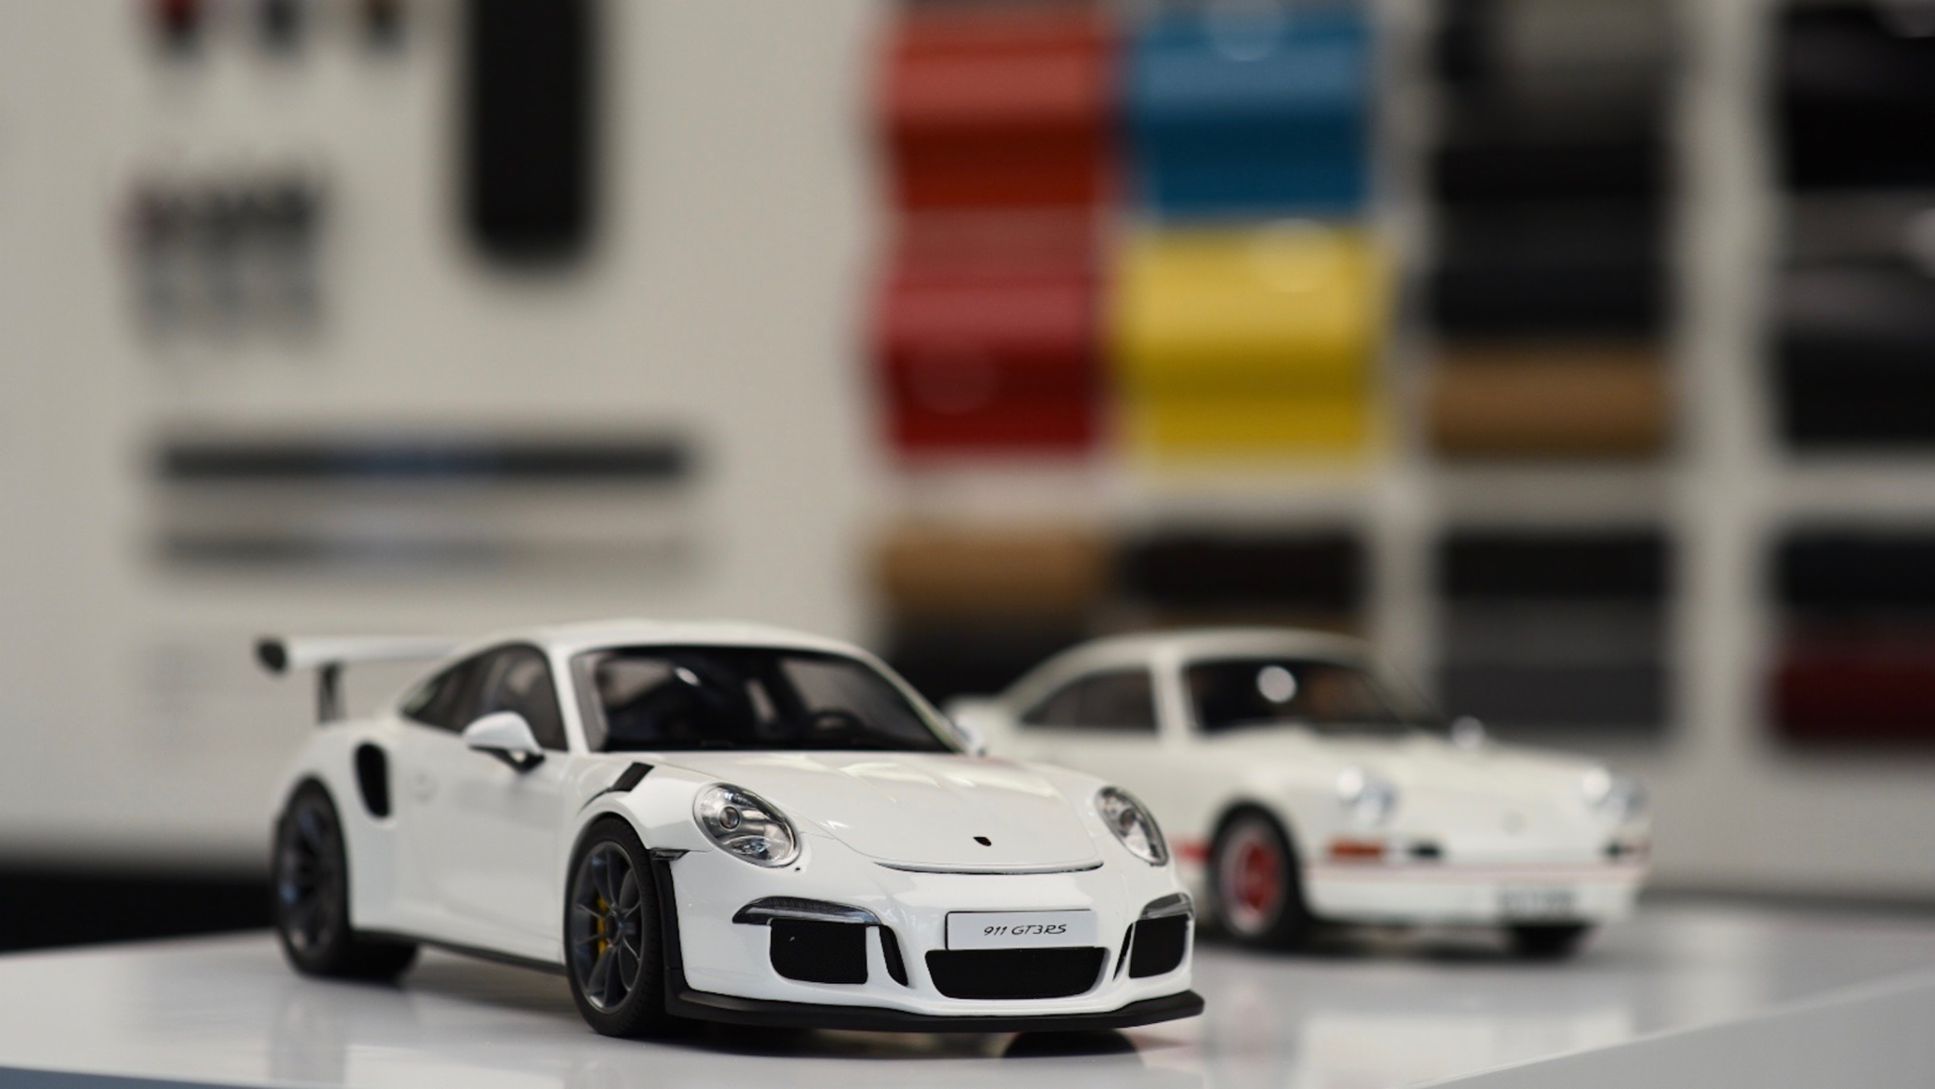 911 GT3 RS, Porsche Studio, Guangzhou, 2017, Porsche AG